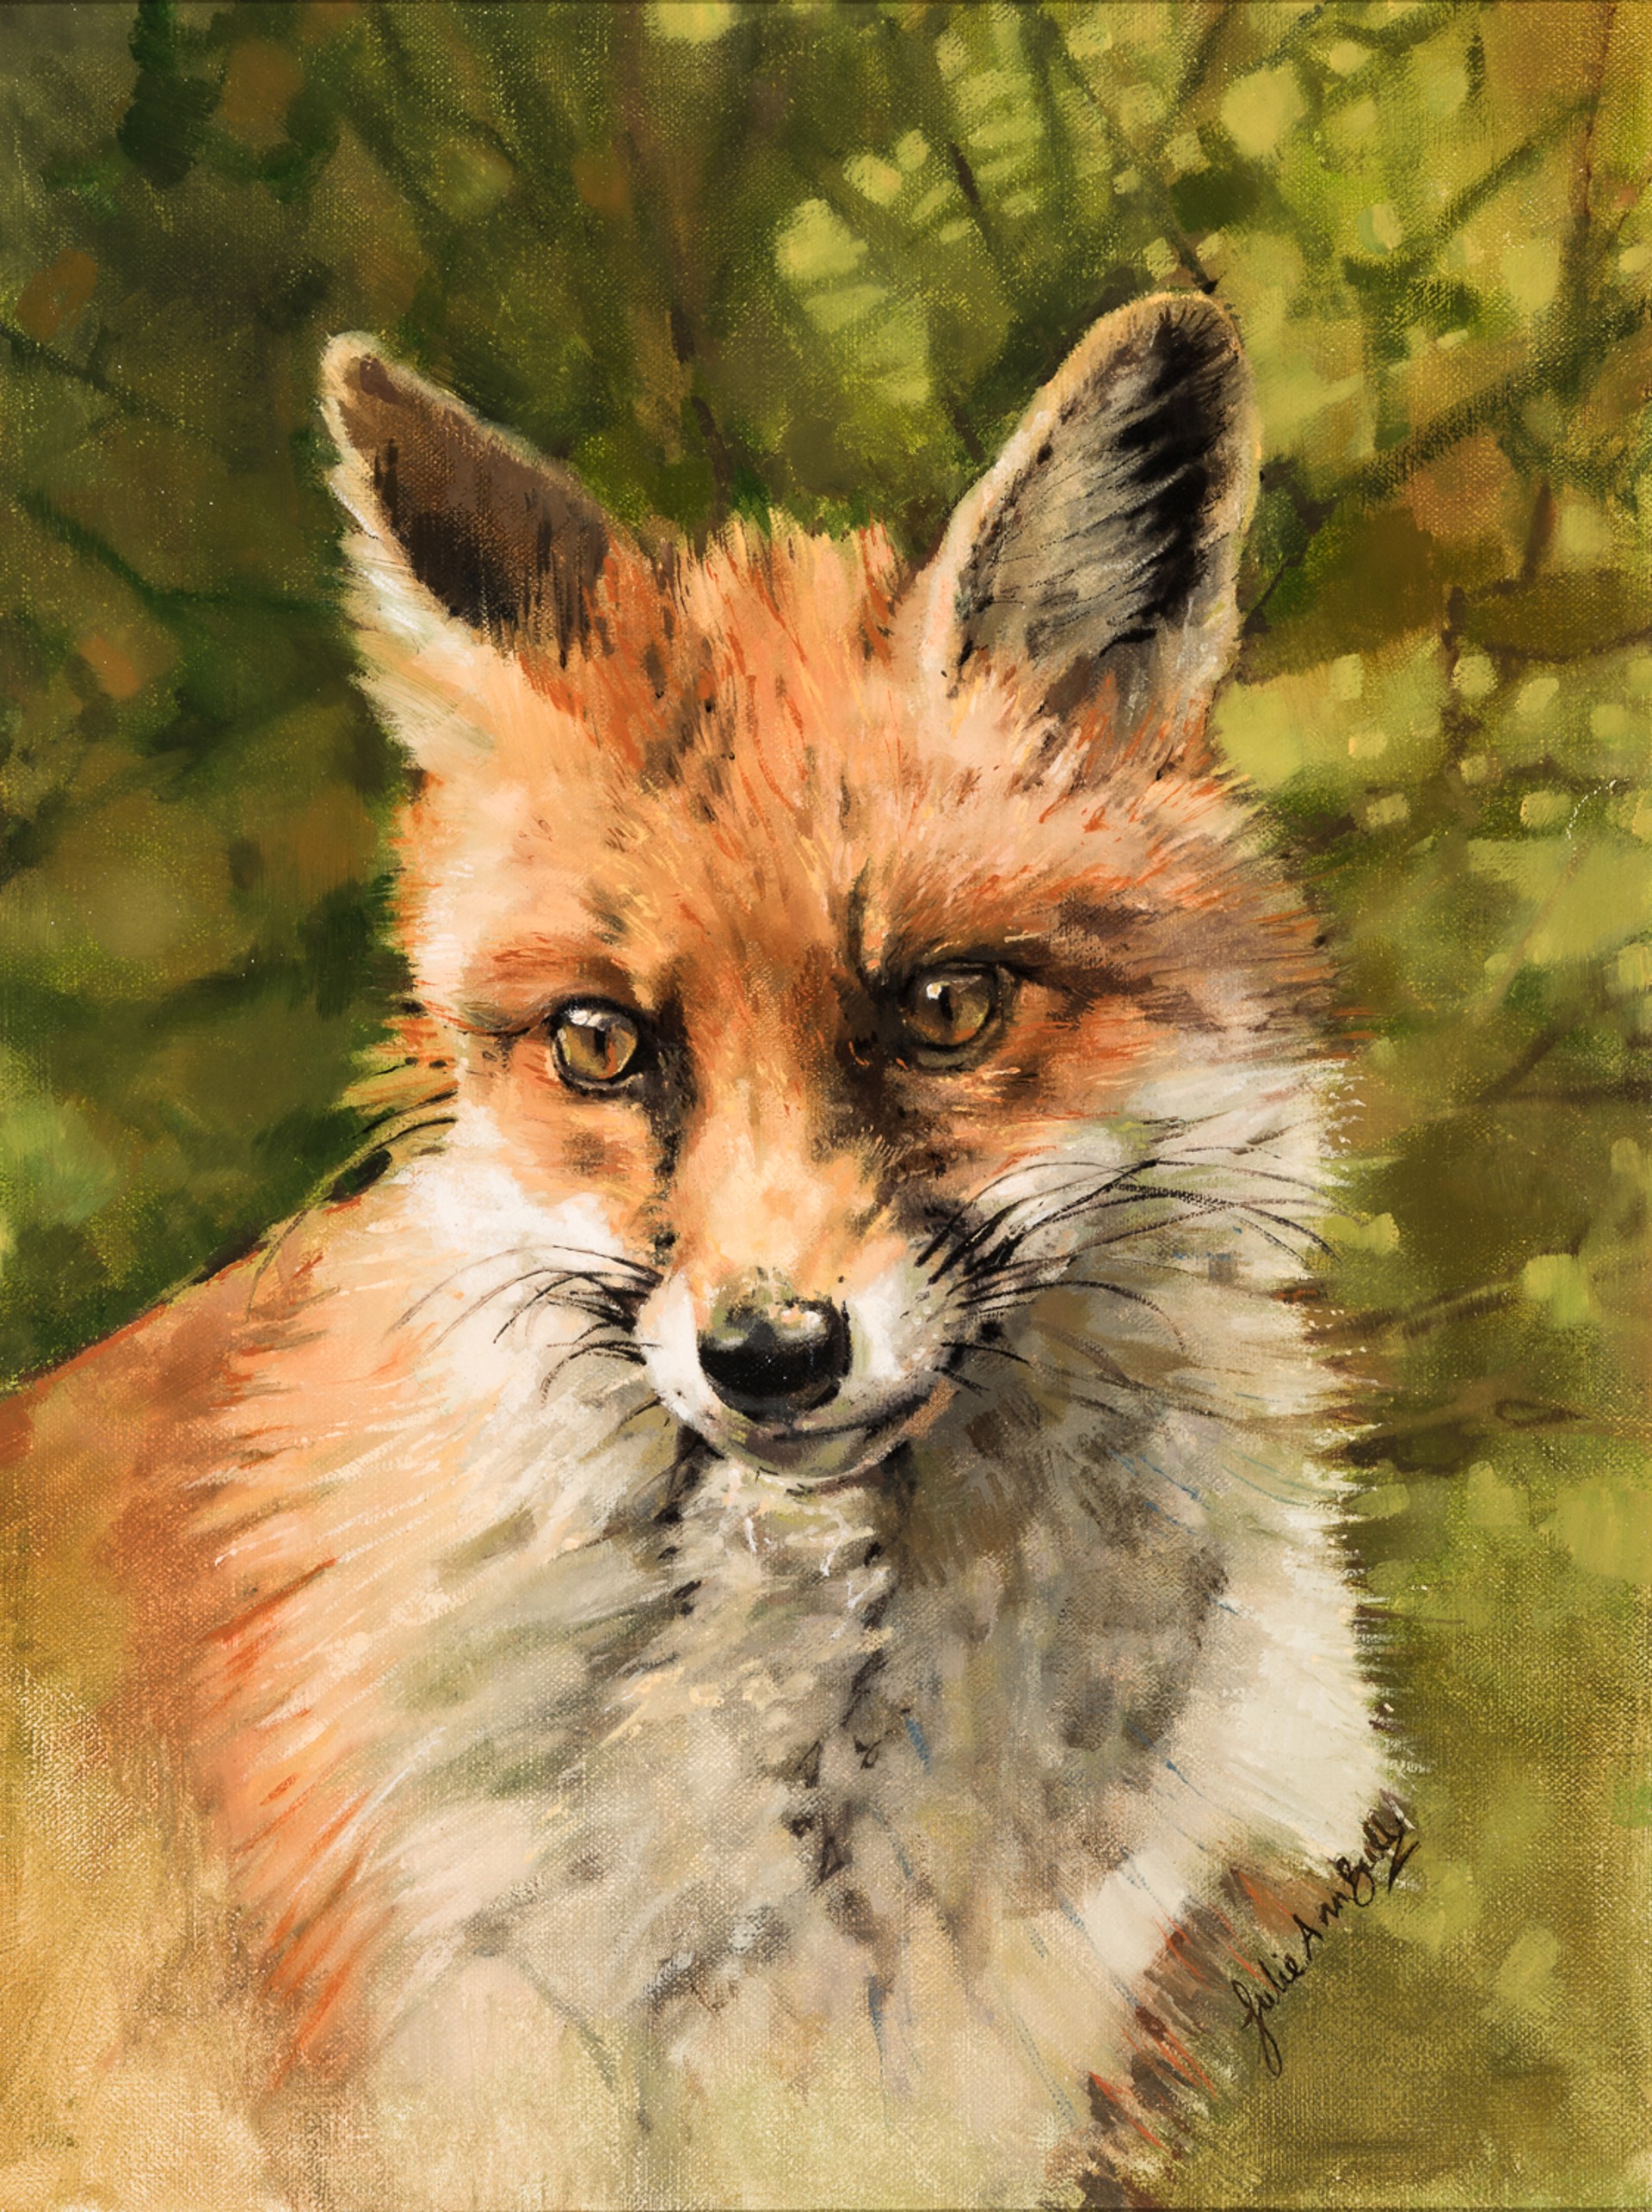 YOUNG FOX by Julie Ann Bull